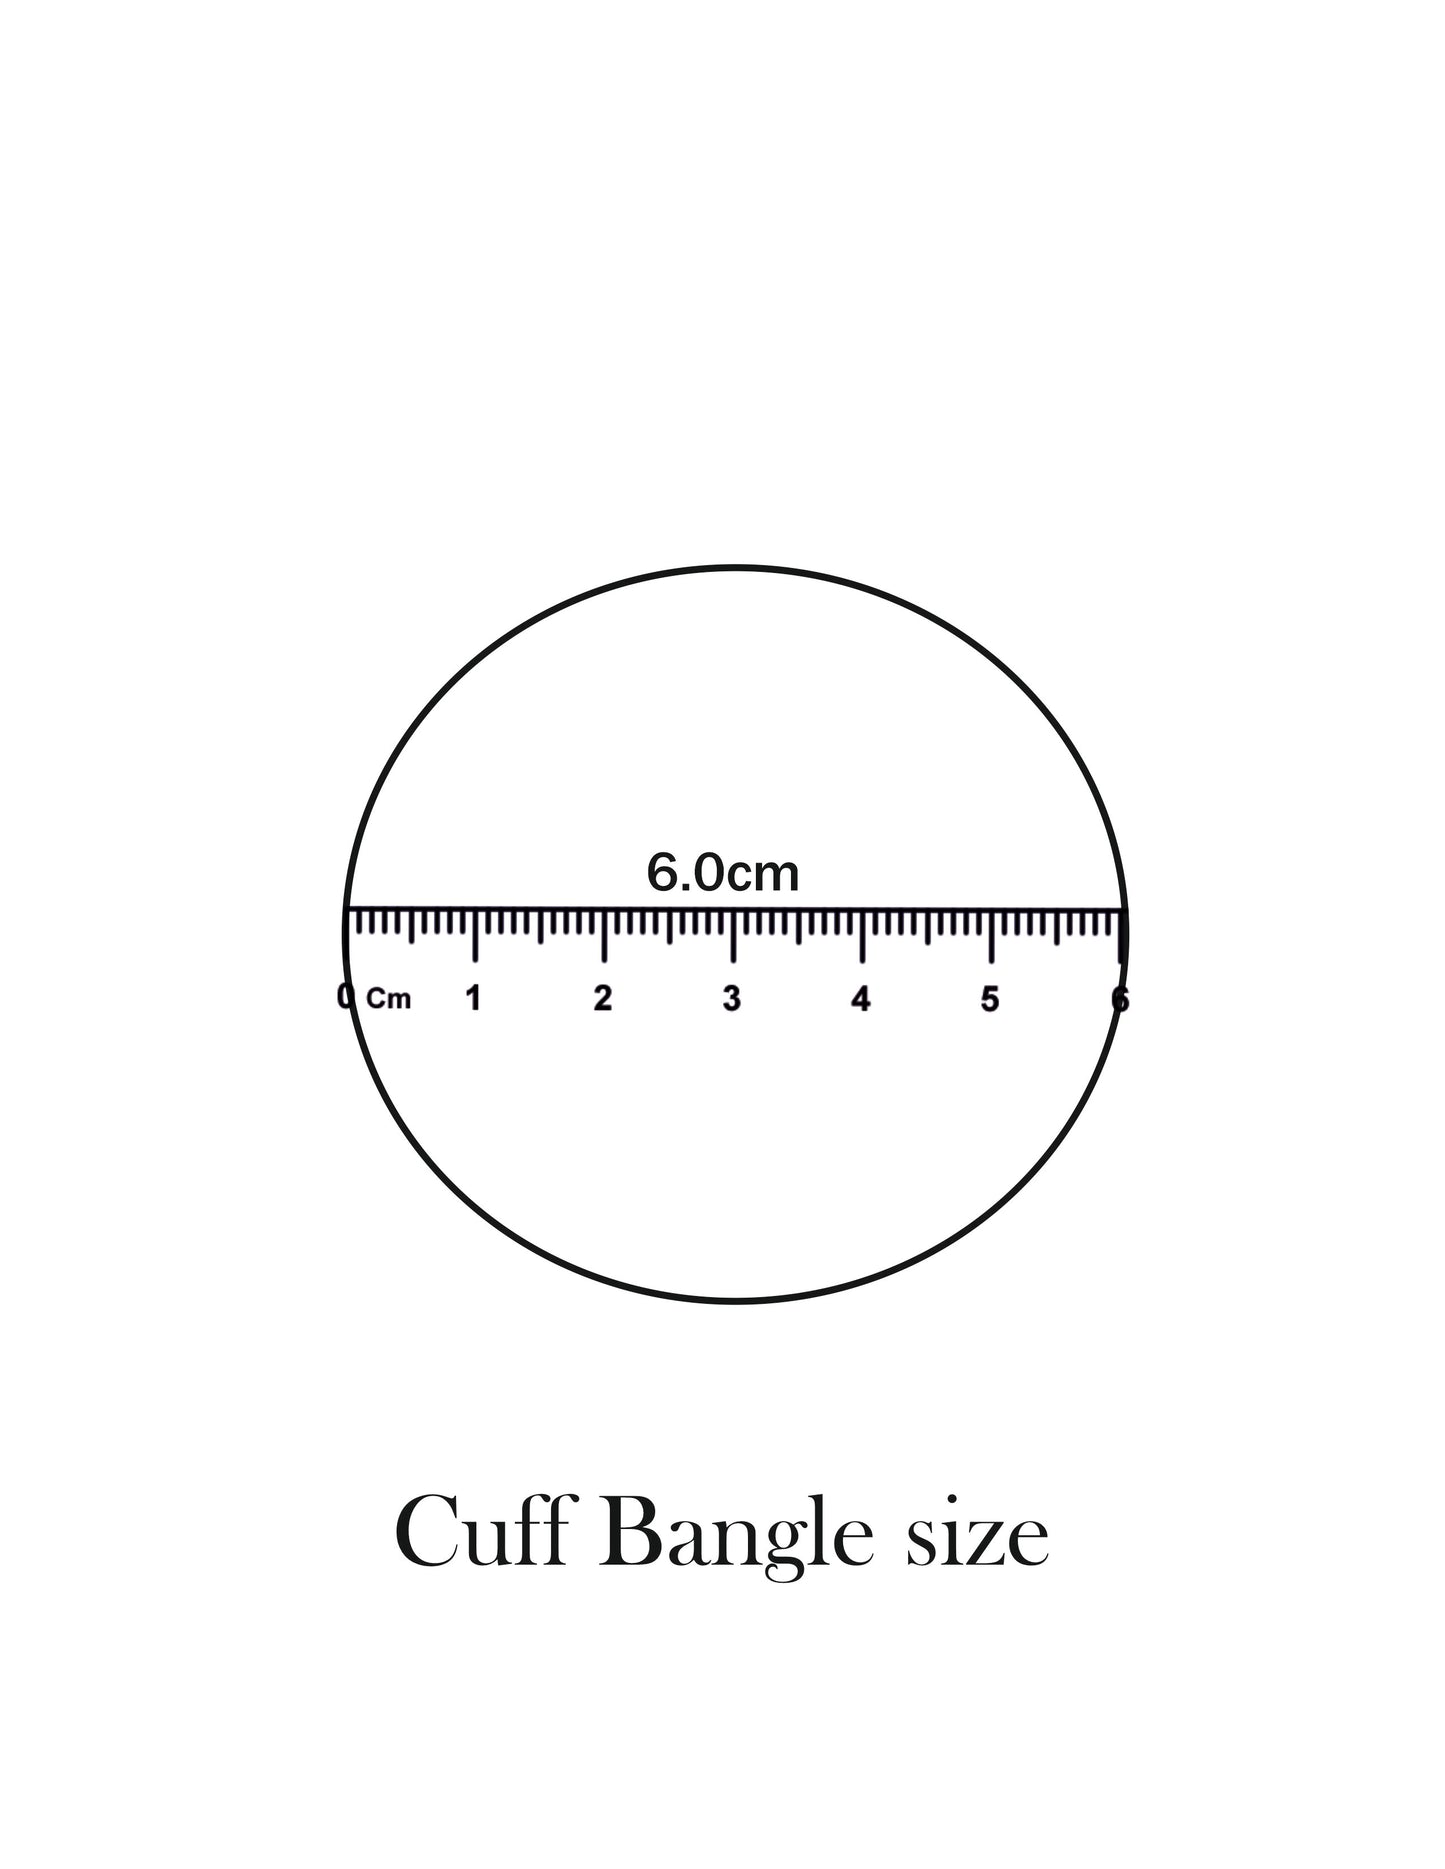 Black Elvi's Cuff Bangle